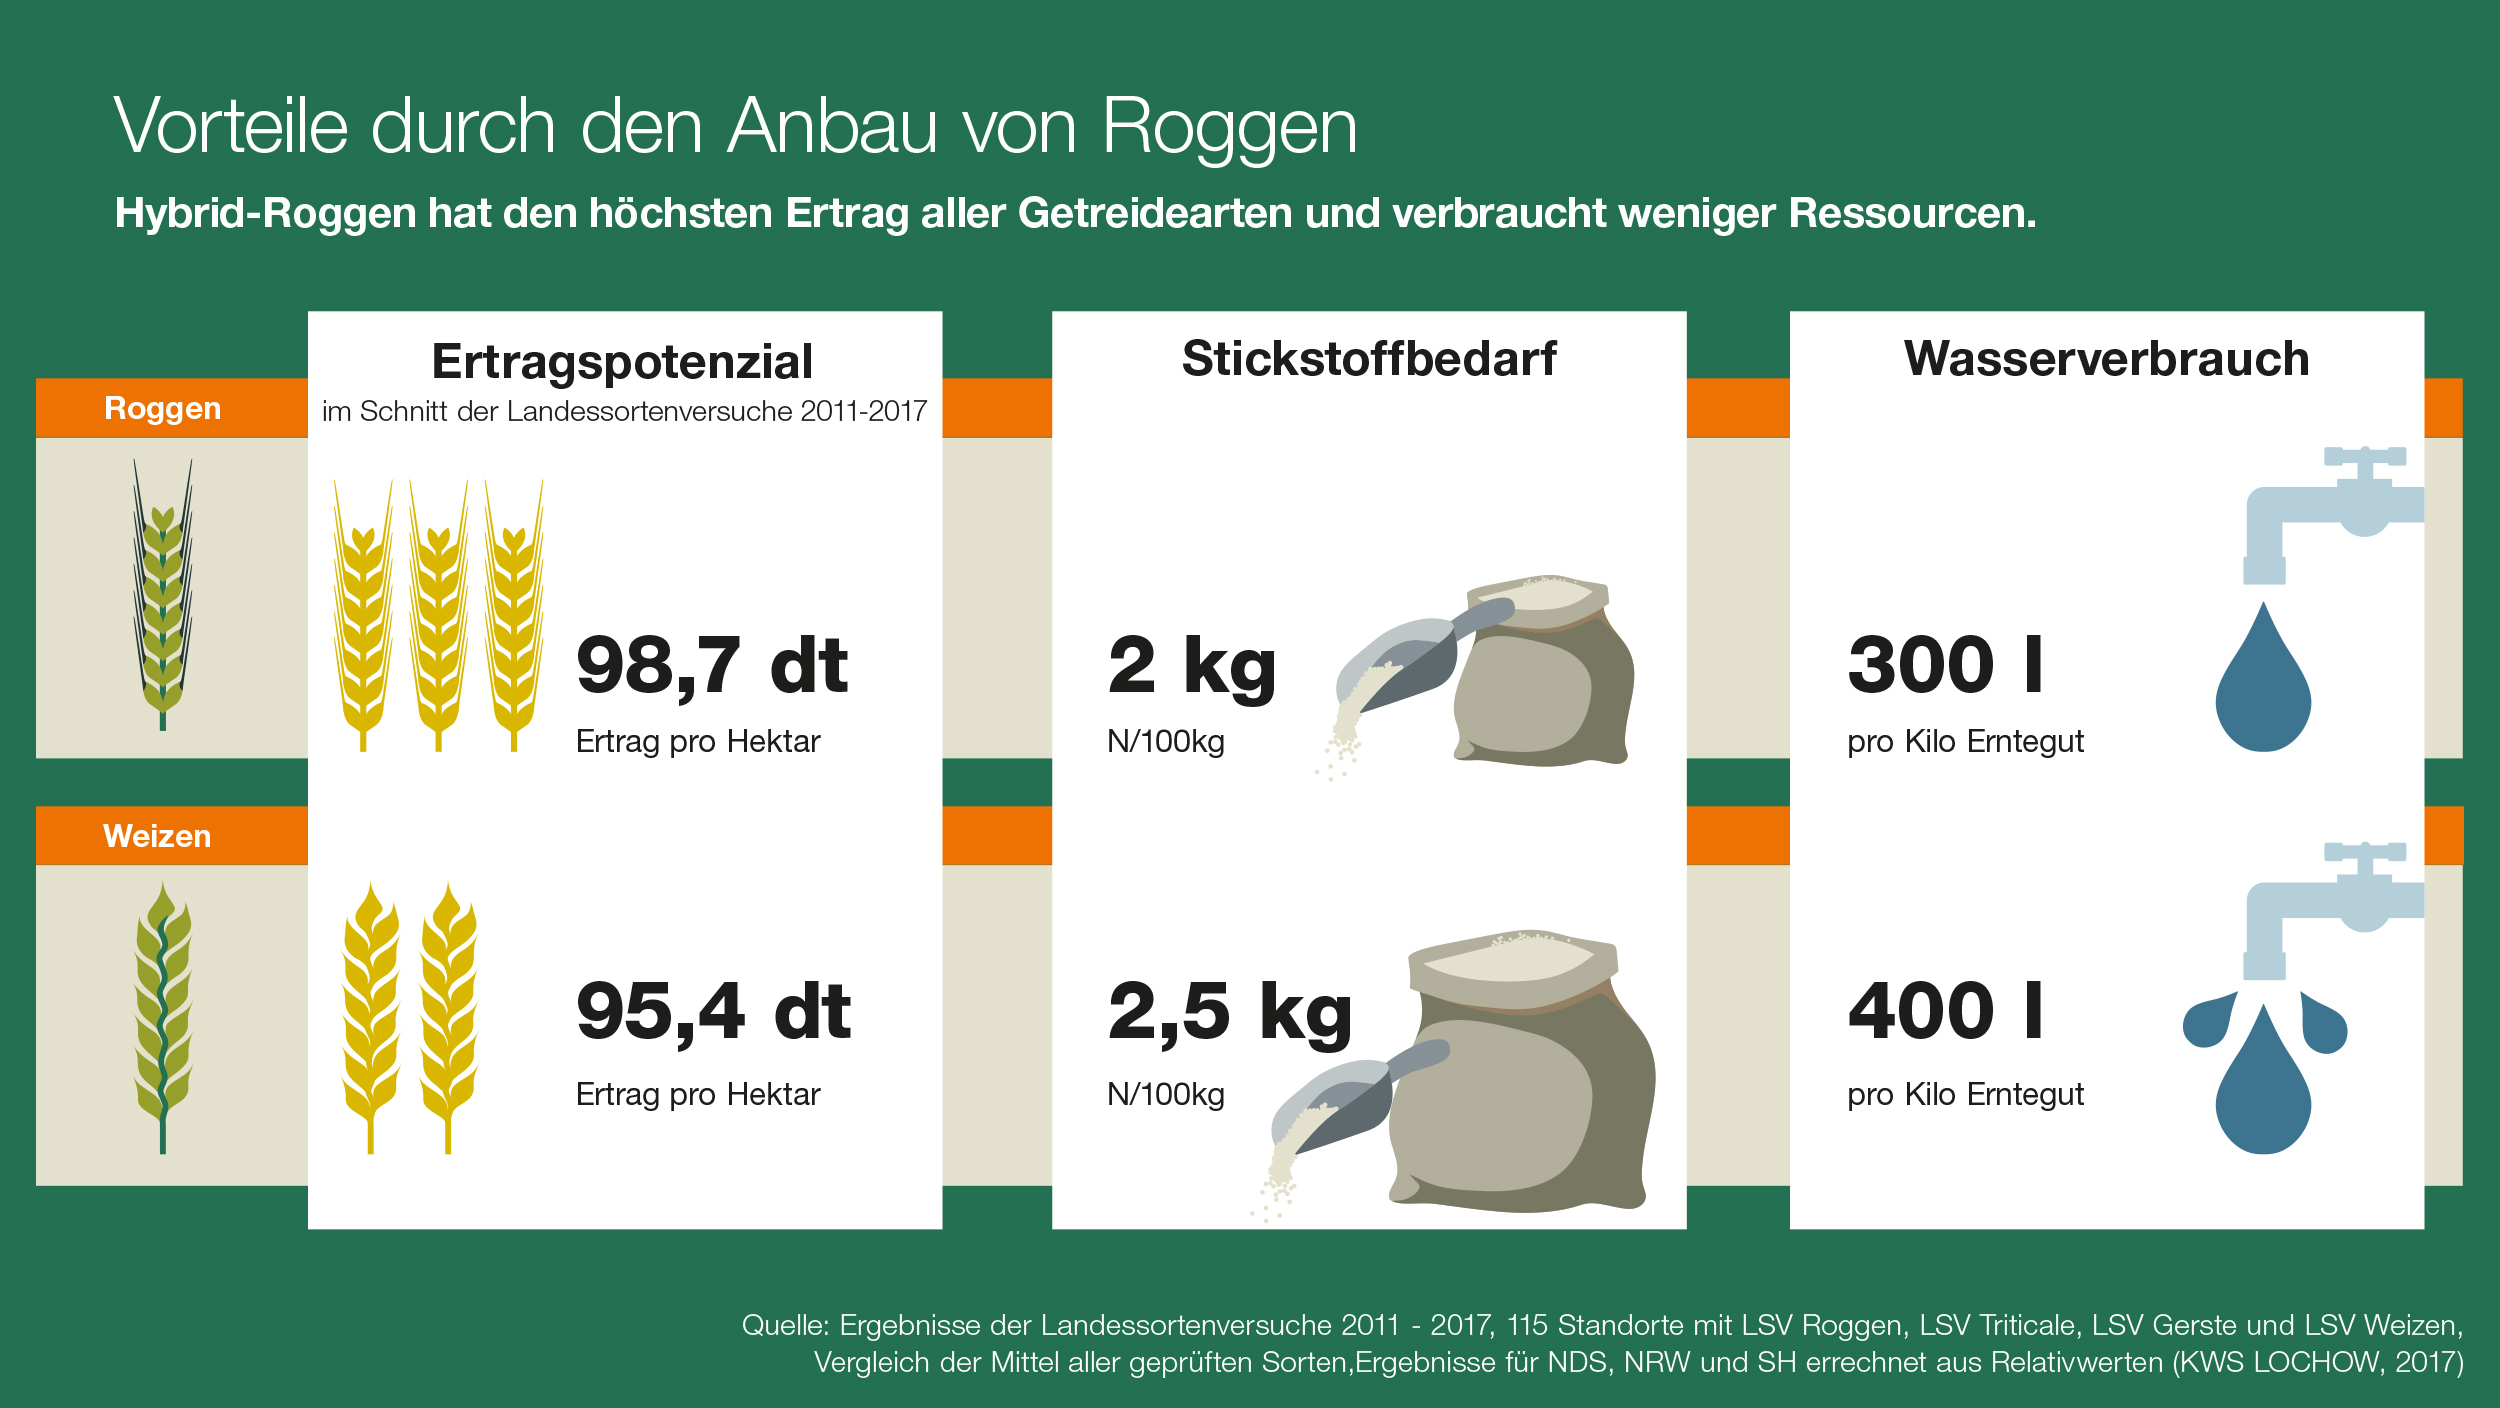 Vorteile durch den Anbau von Roggen aufbereitet in einer Infografik.